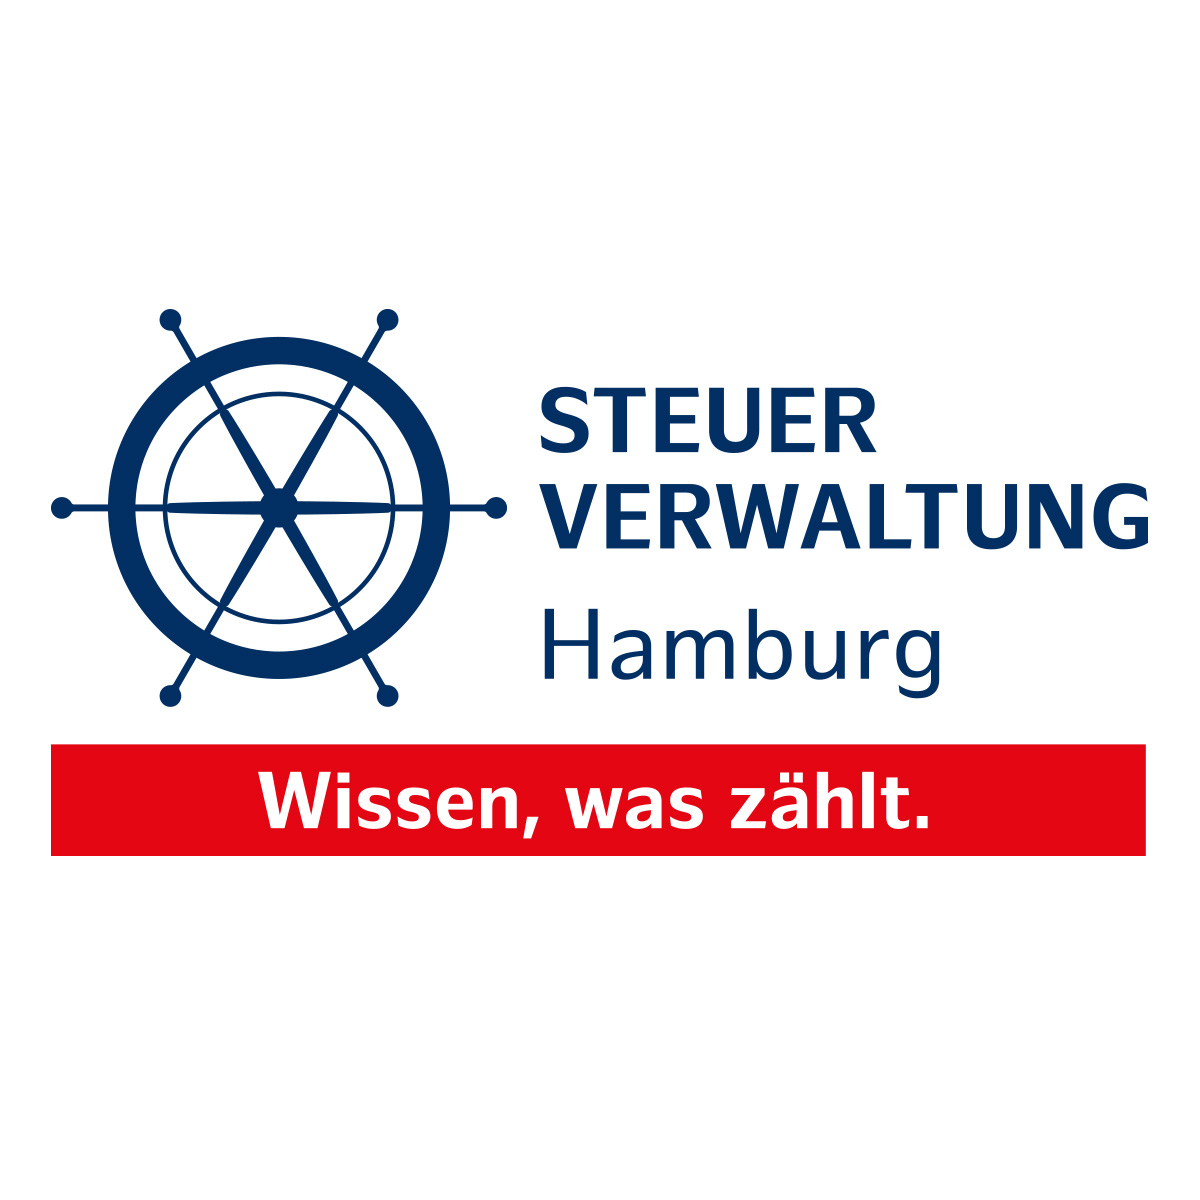 Steuerverwaltung Hamburg